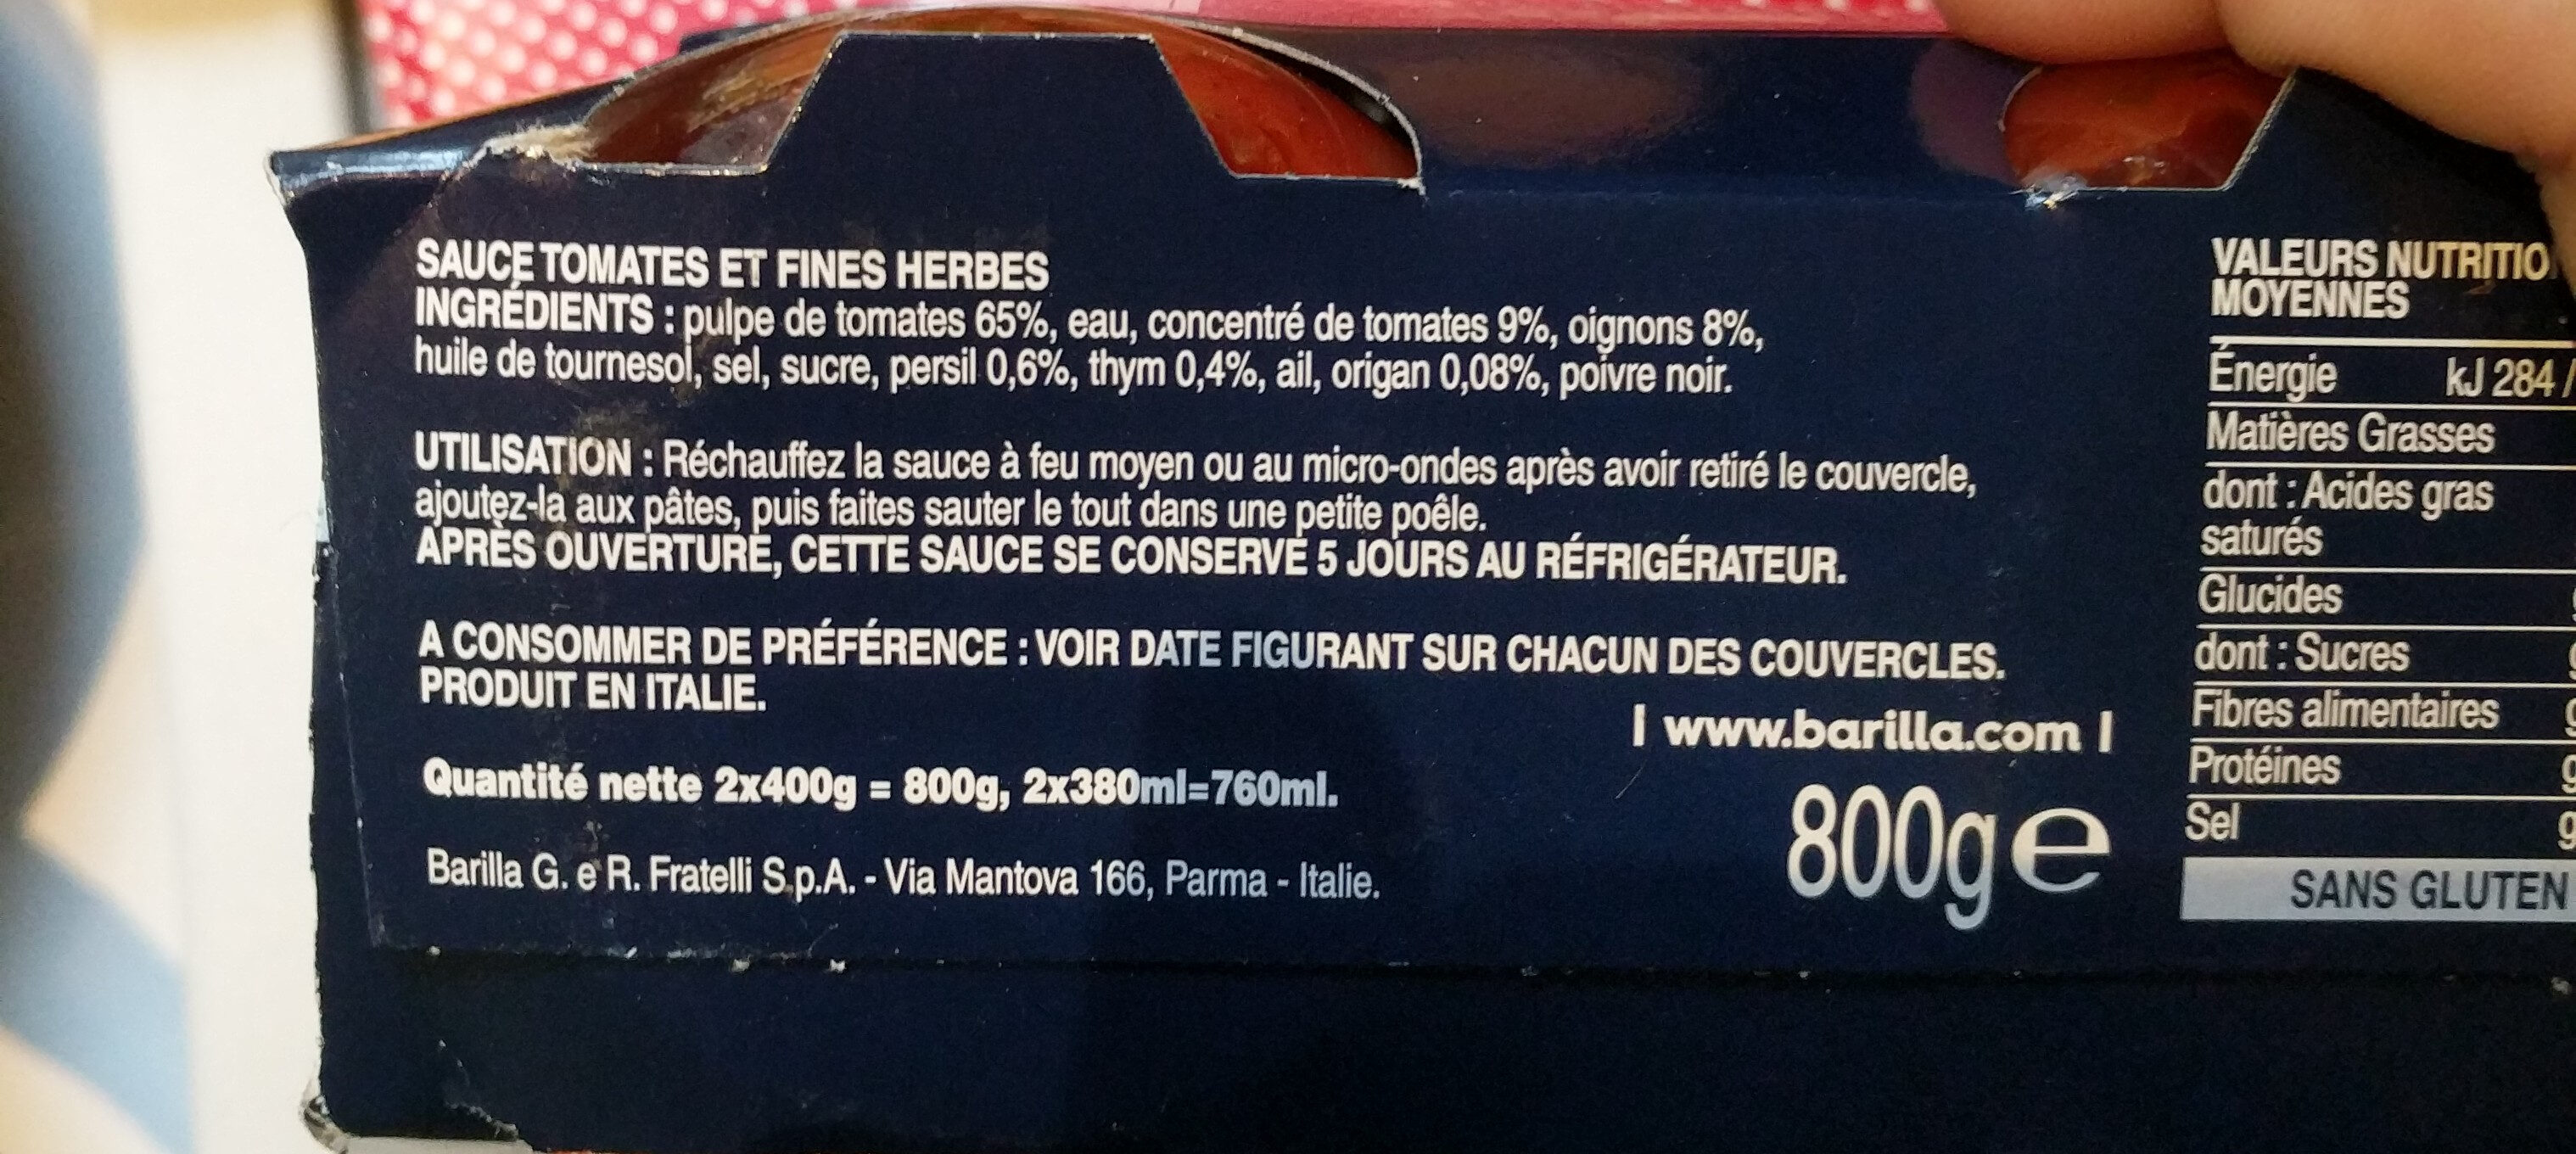 Bundle provencale 400gx2 francia - Ingrediënten - fr